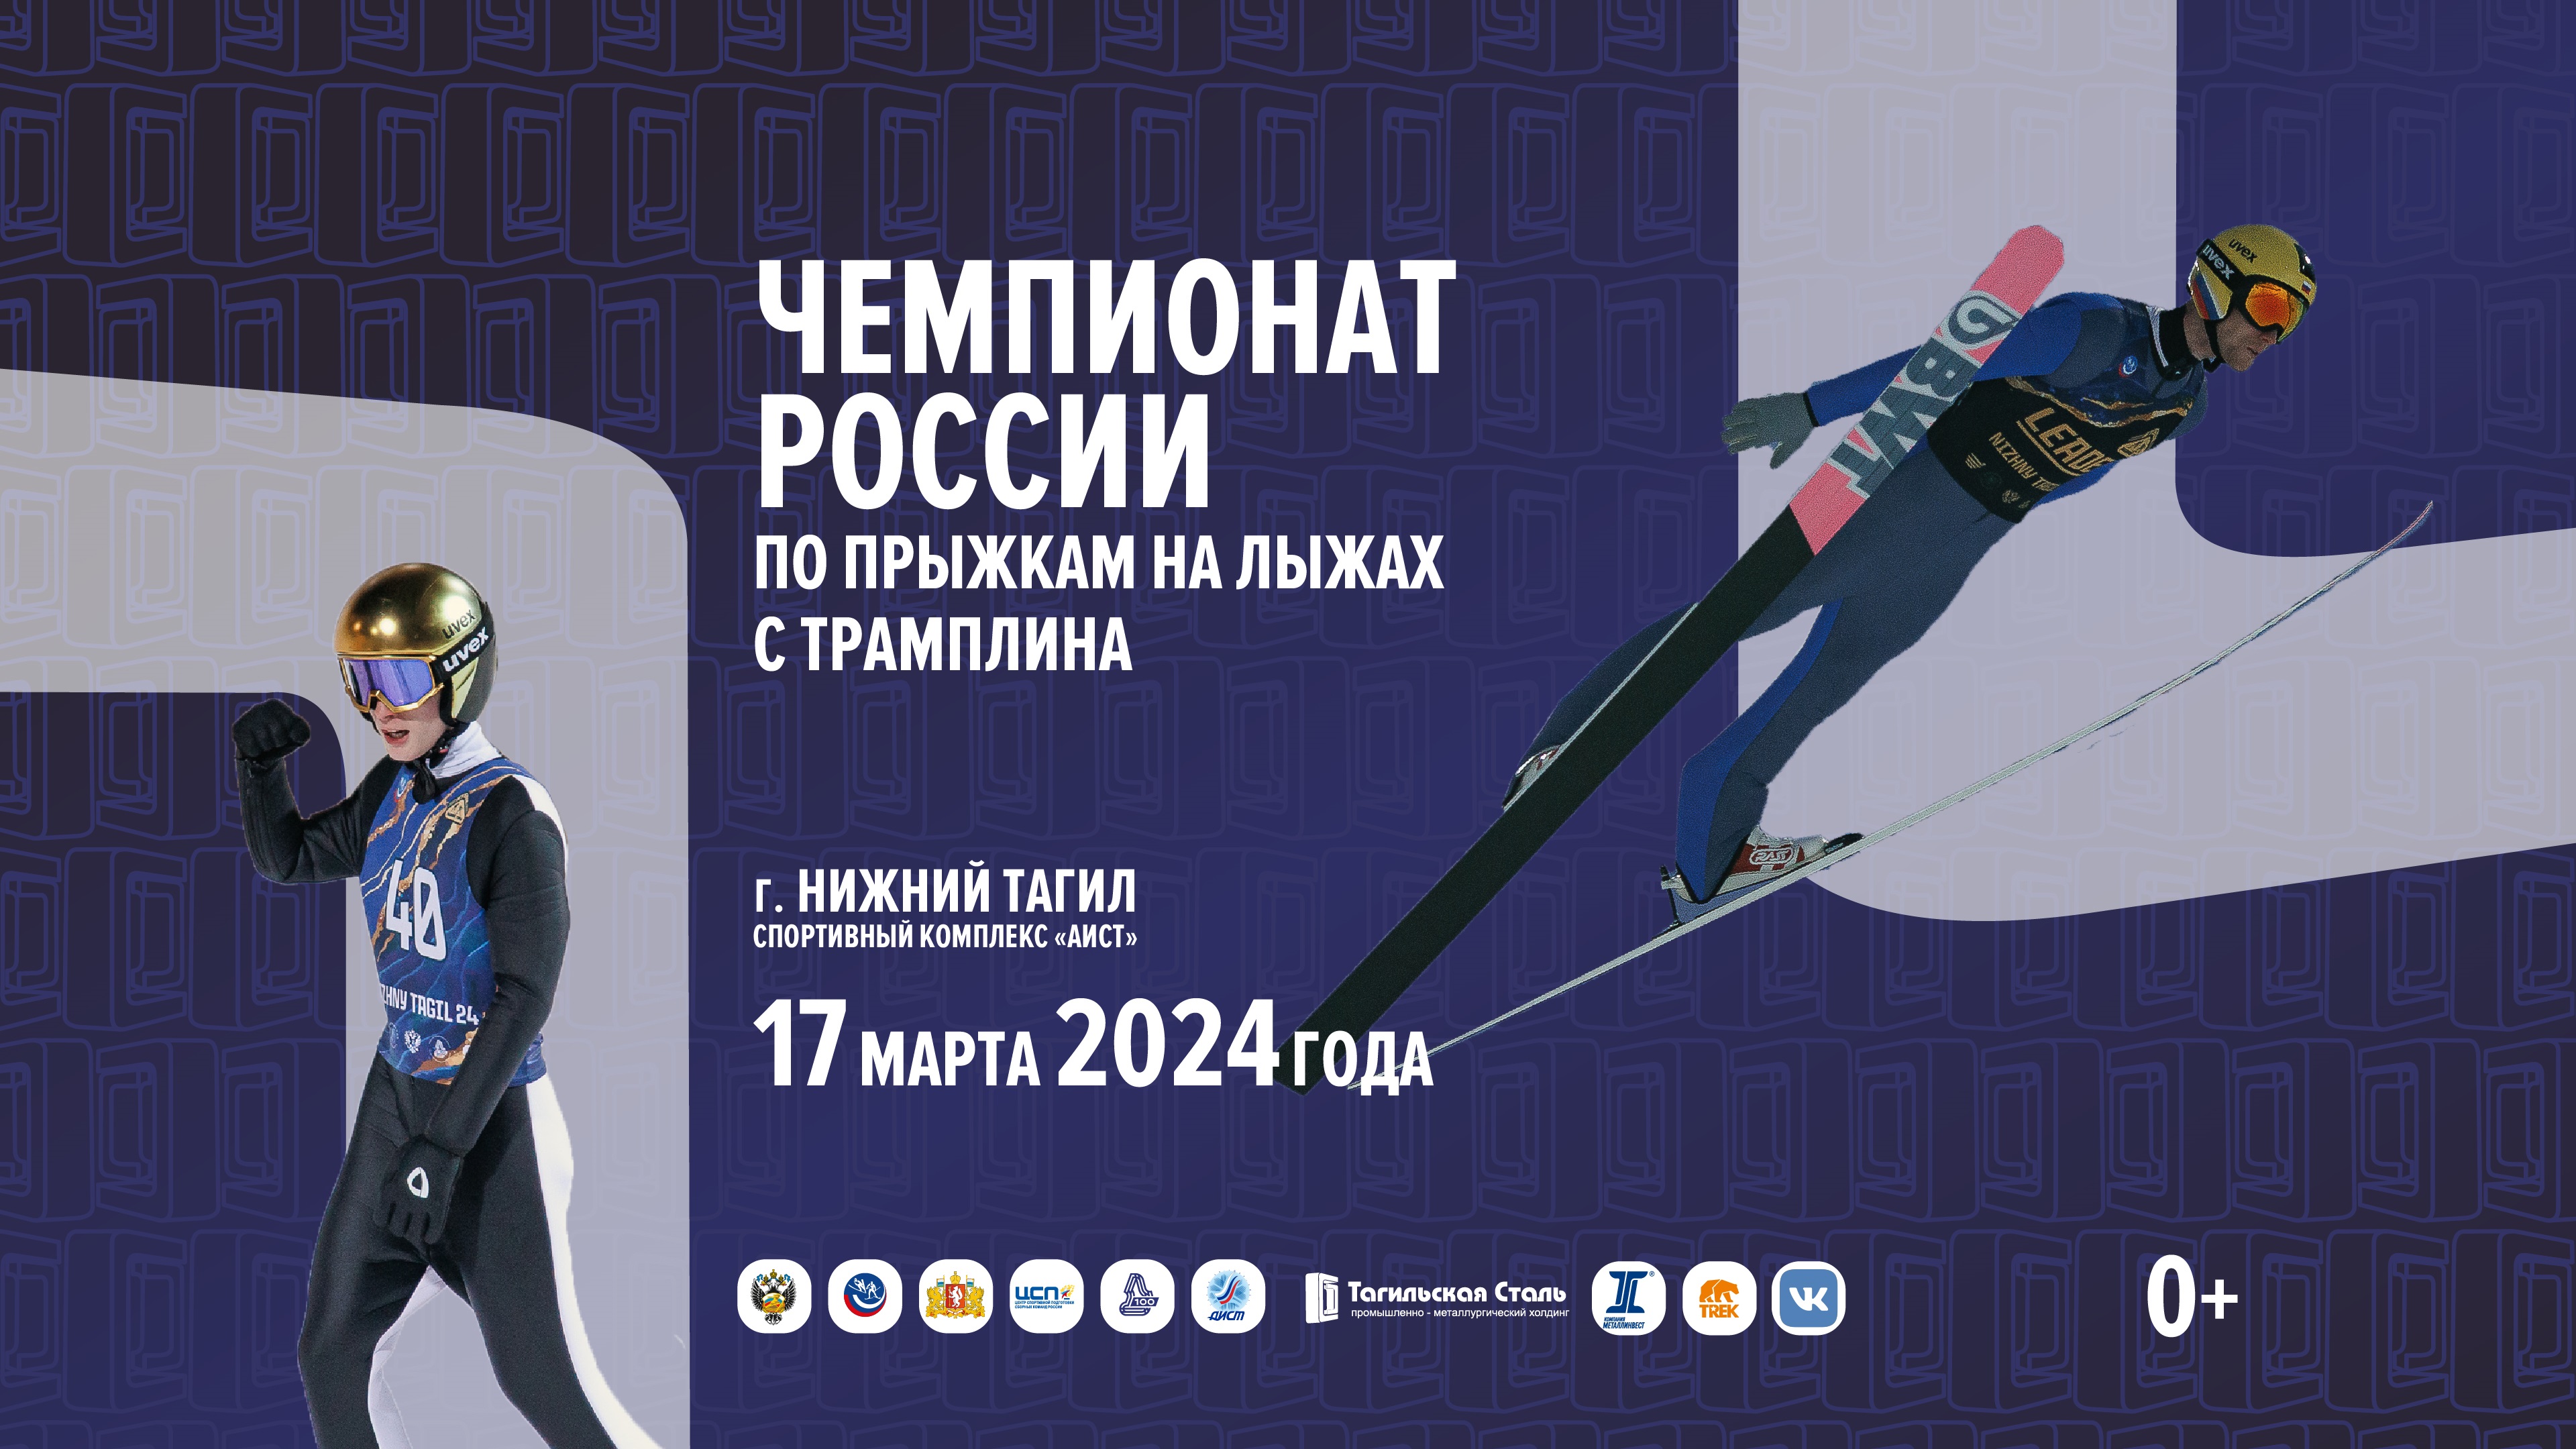 Прямая трансляция Чемпионата России по прыжкам с трамплина